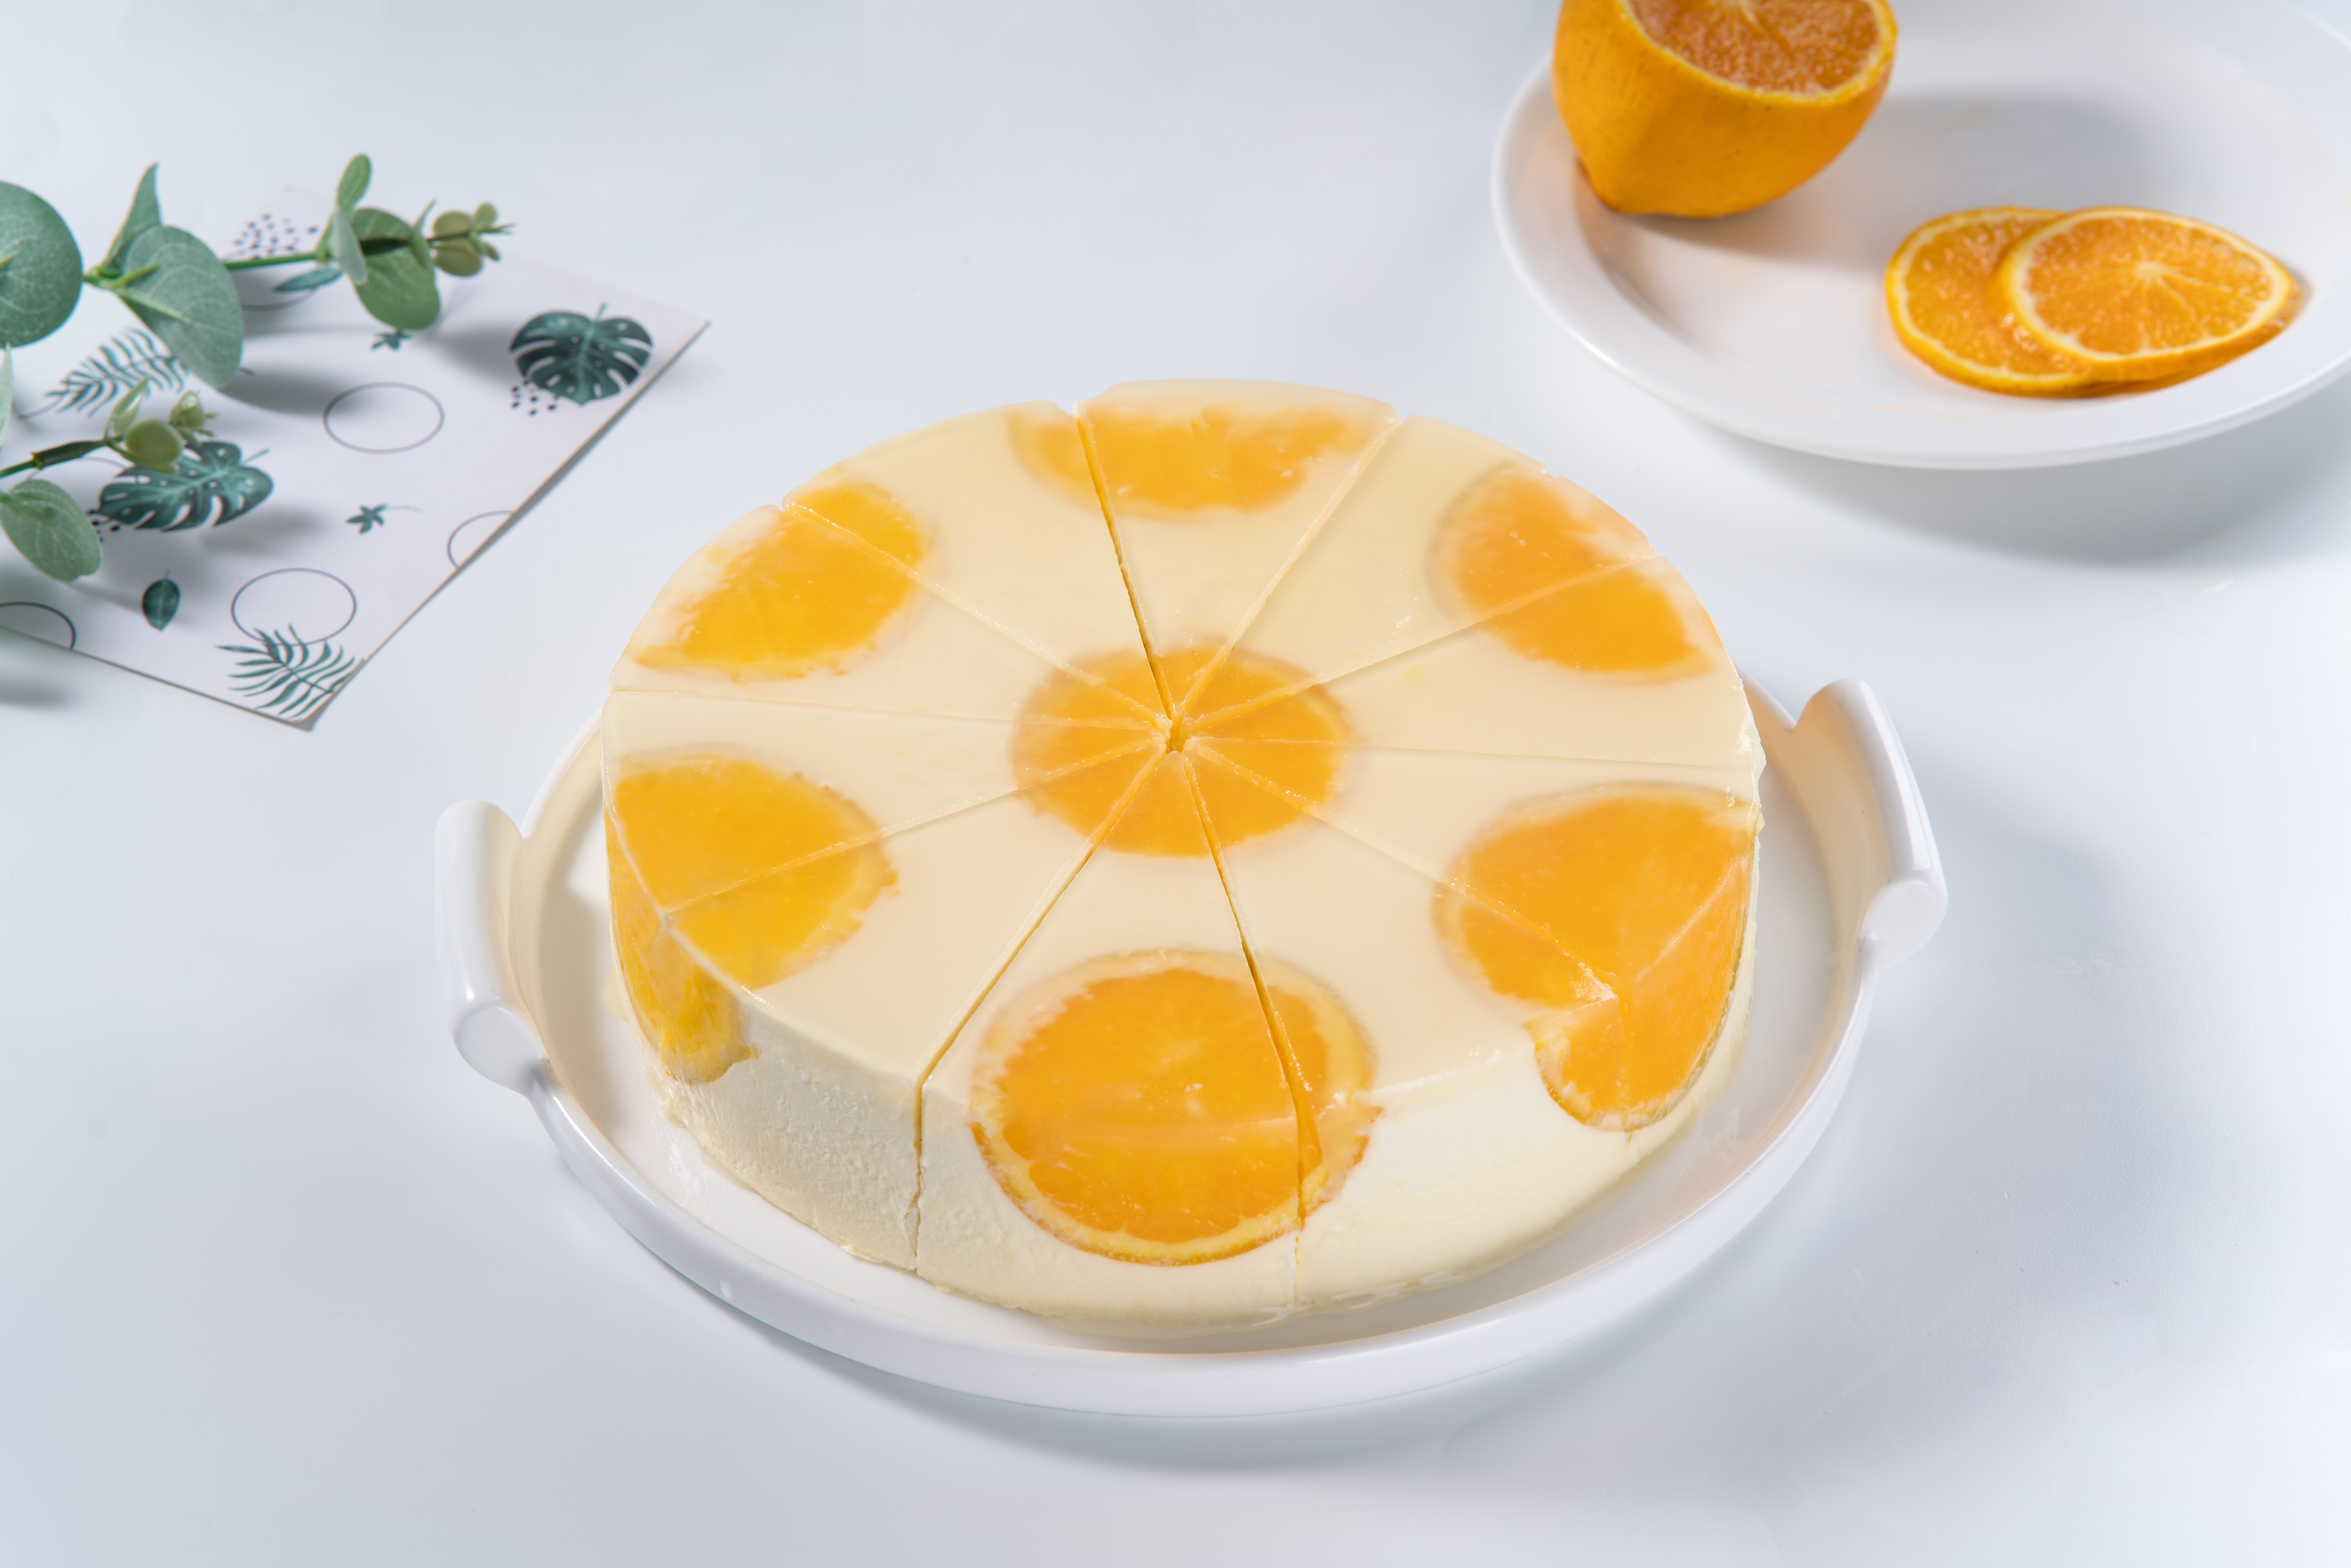 Orange Mousse Cake